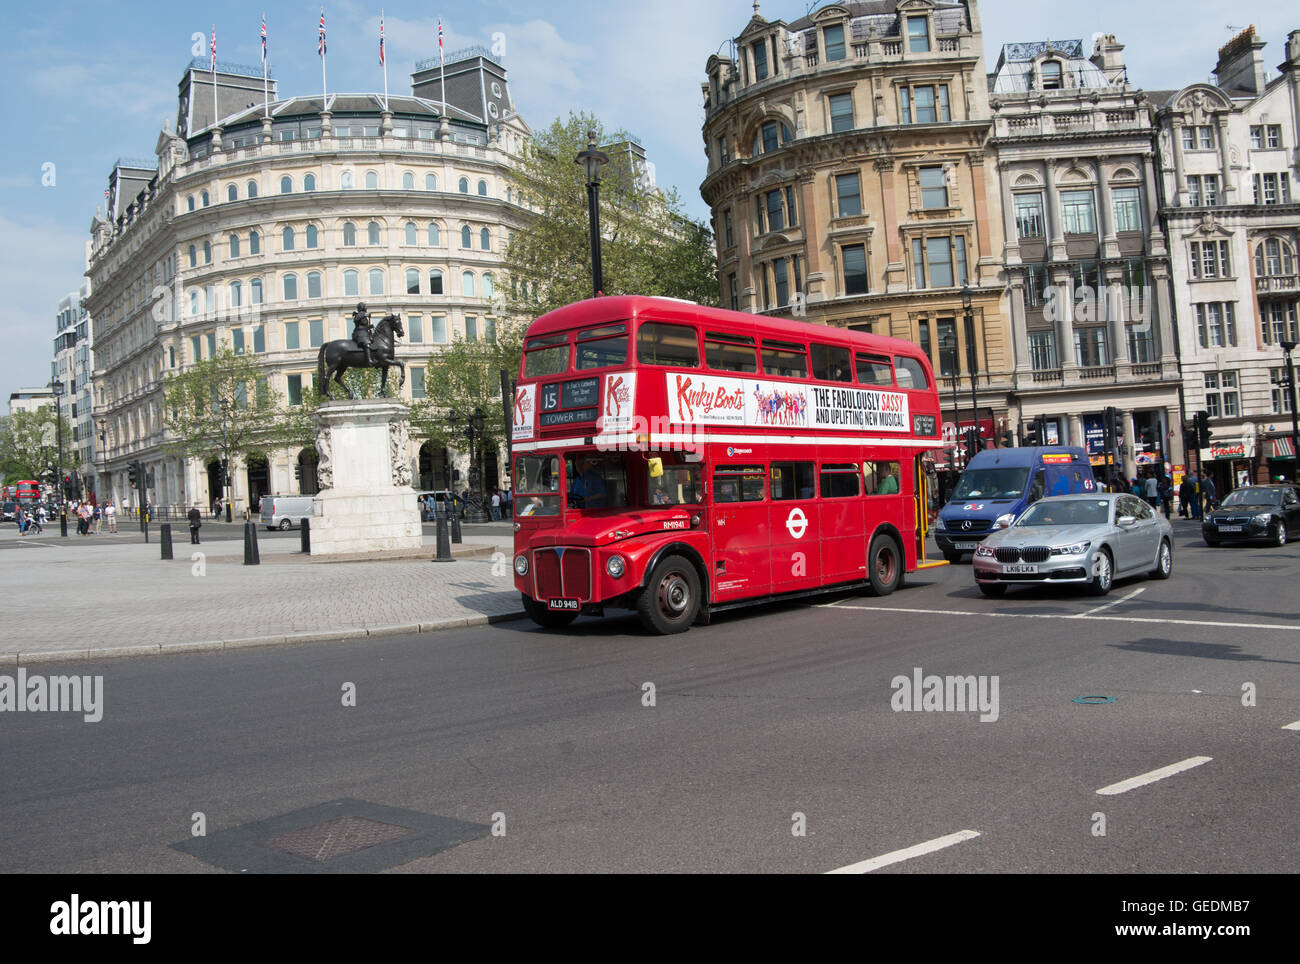 Un AEC Routemaster bus operado por Stagecoach London sobre el patrimonio de la ruta 15 pasa por la estatua del rey Carlos I en Trafalgar Sqr. Foto de stock